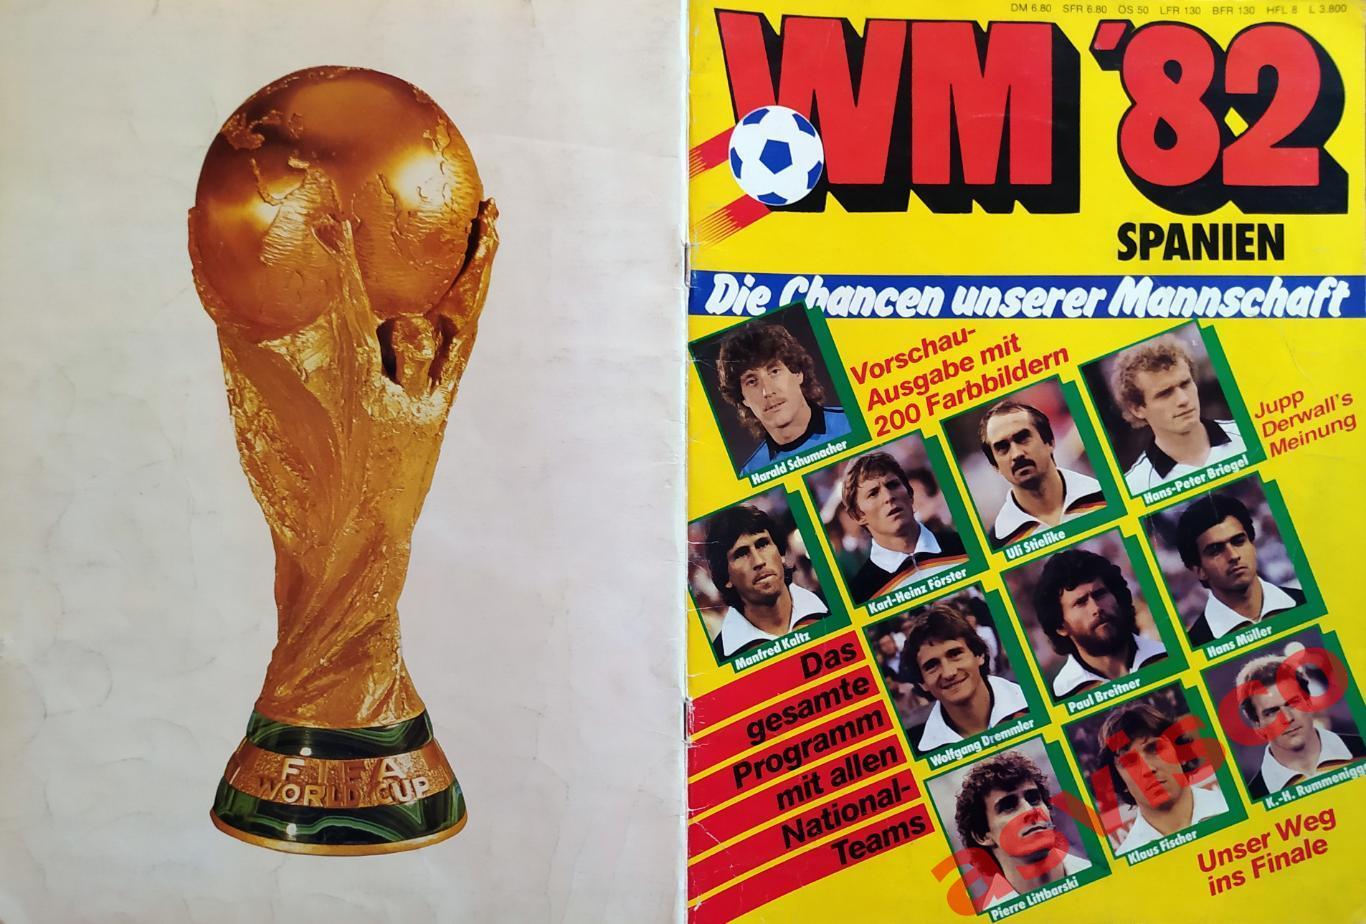 Чемпионат Мира по футболу в Испании 1982 года. Представление команд. Автографы.